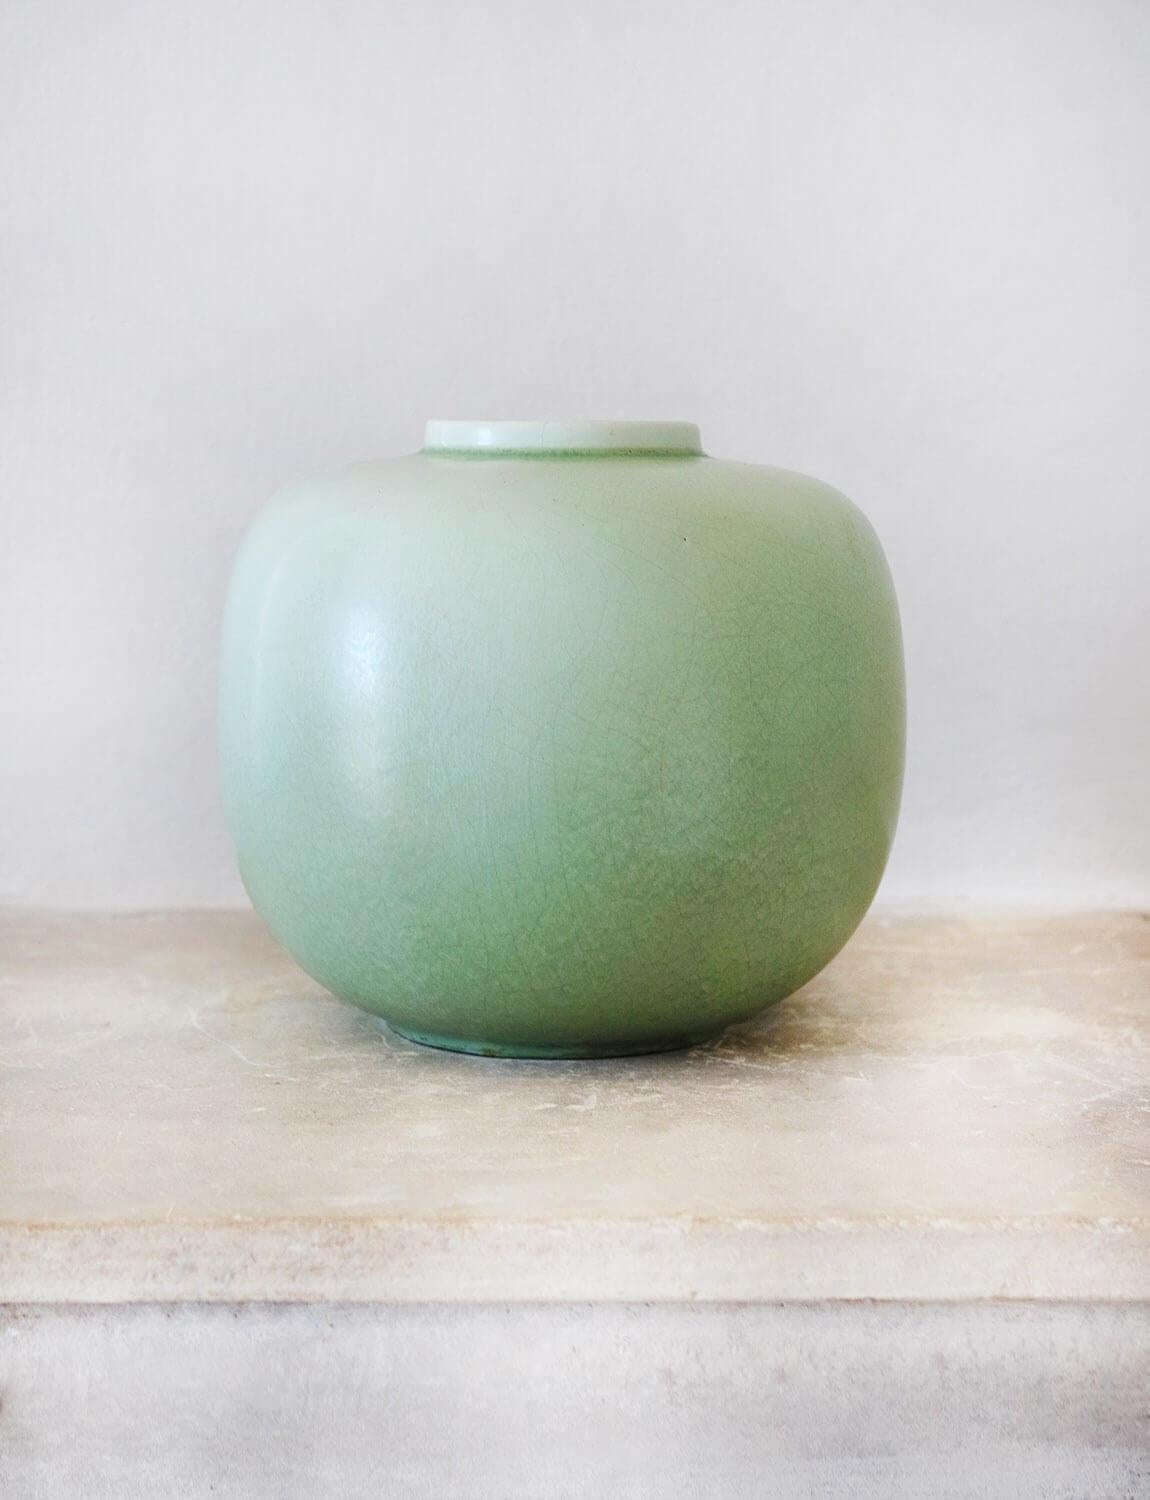 Vase aus Celadon, entworfen von Guido Andlovitz für das Keramikunternehmen Società Ceramica Italiana, Lavenia, wo er in den 1930er Jahren als künstlerischer Leiter tätig war. Guido Andlovitz (1900-1971) war ein bekannter italienischer Keramiker,